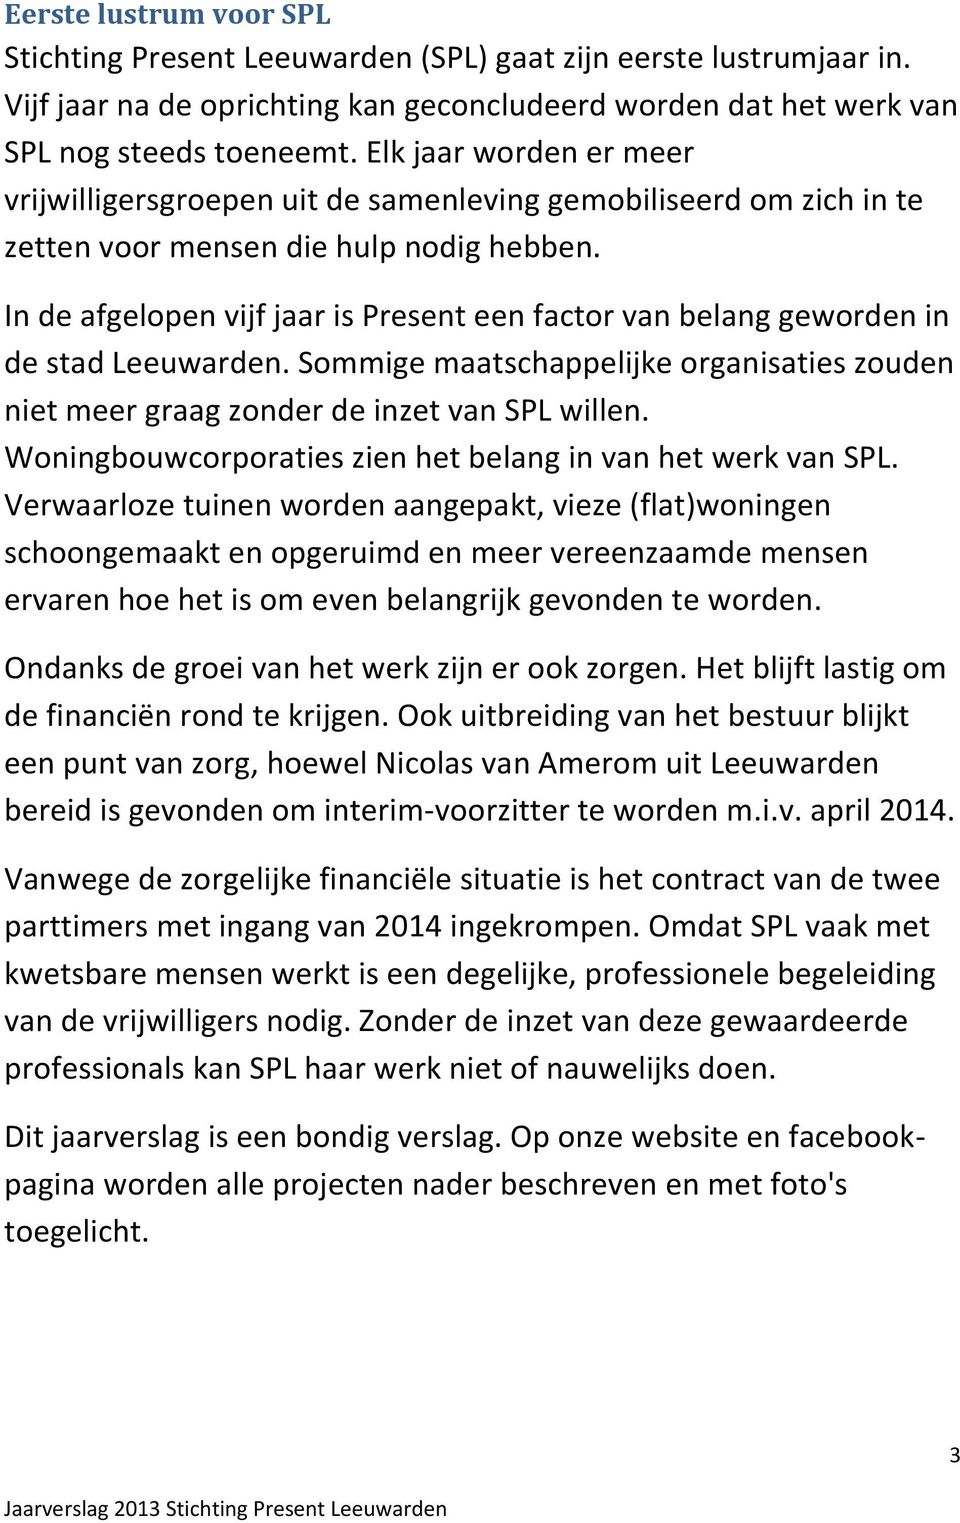 In de afgelopen vijf jaar is Present een factor van belang geworden in de stad Leeuwarden. Sommige maatschappelijke organisaties zouden niet meer graag zonder de inzet van SPL willen.